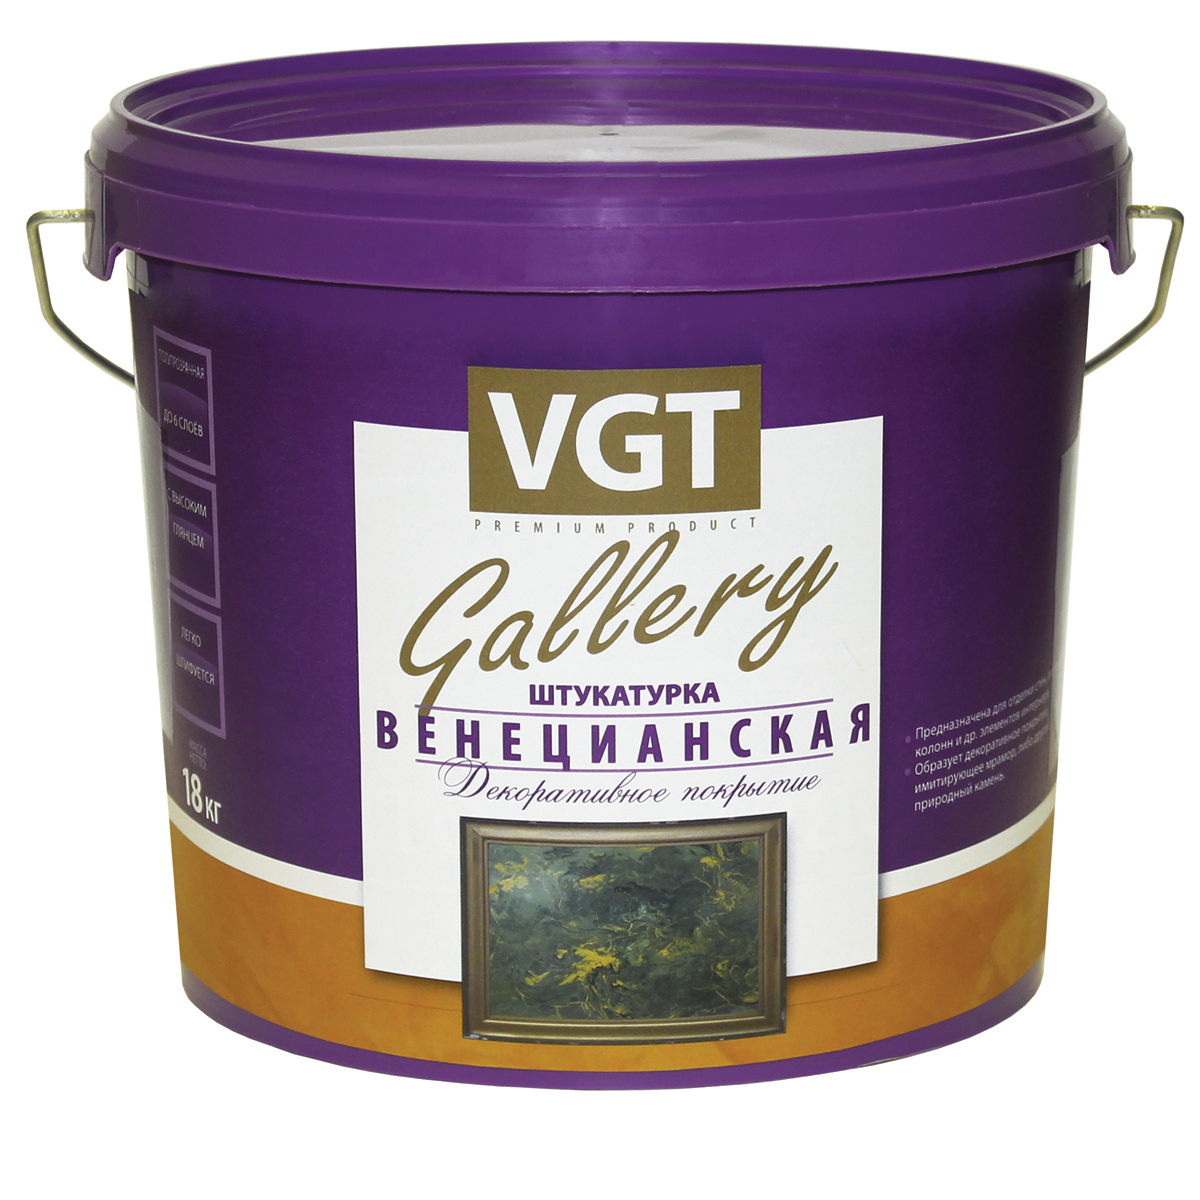 Декоративная штукатурка венецианская VGT Gallery, 8 кг - купить в Москве, цены на Мегамаркет